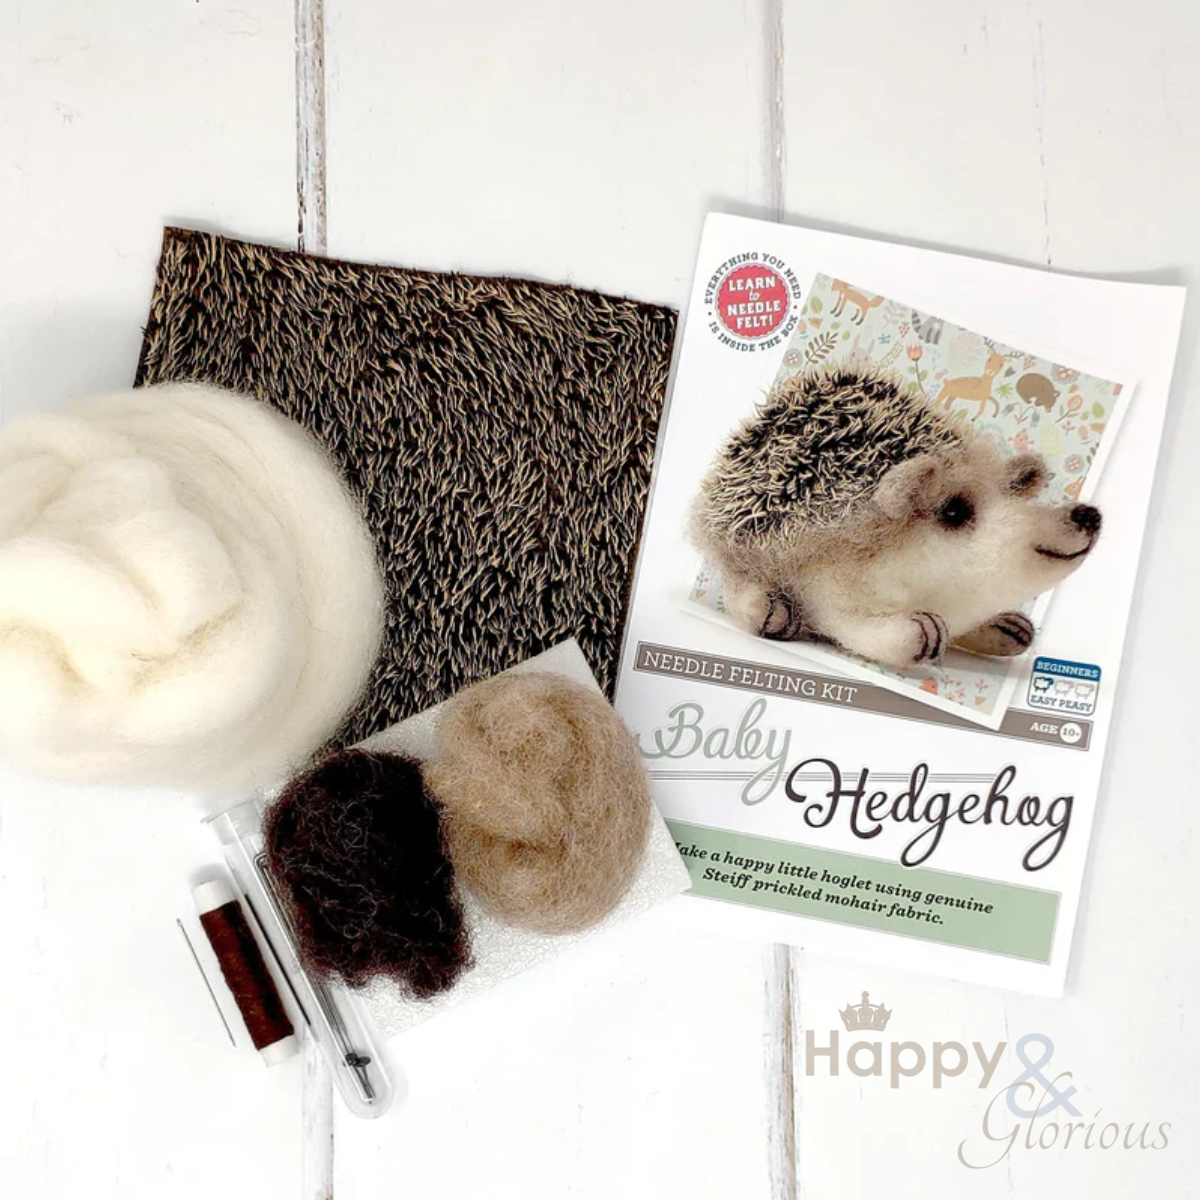 Baby hedgehog needle felting craft kit